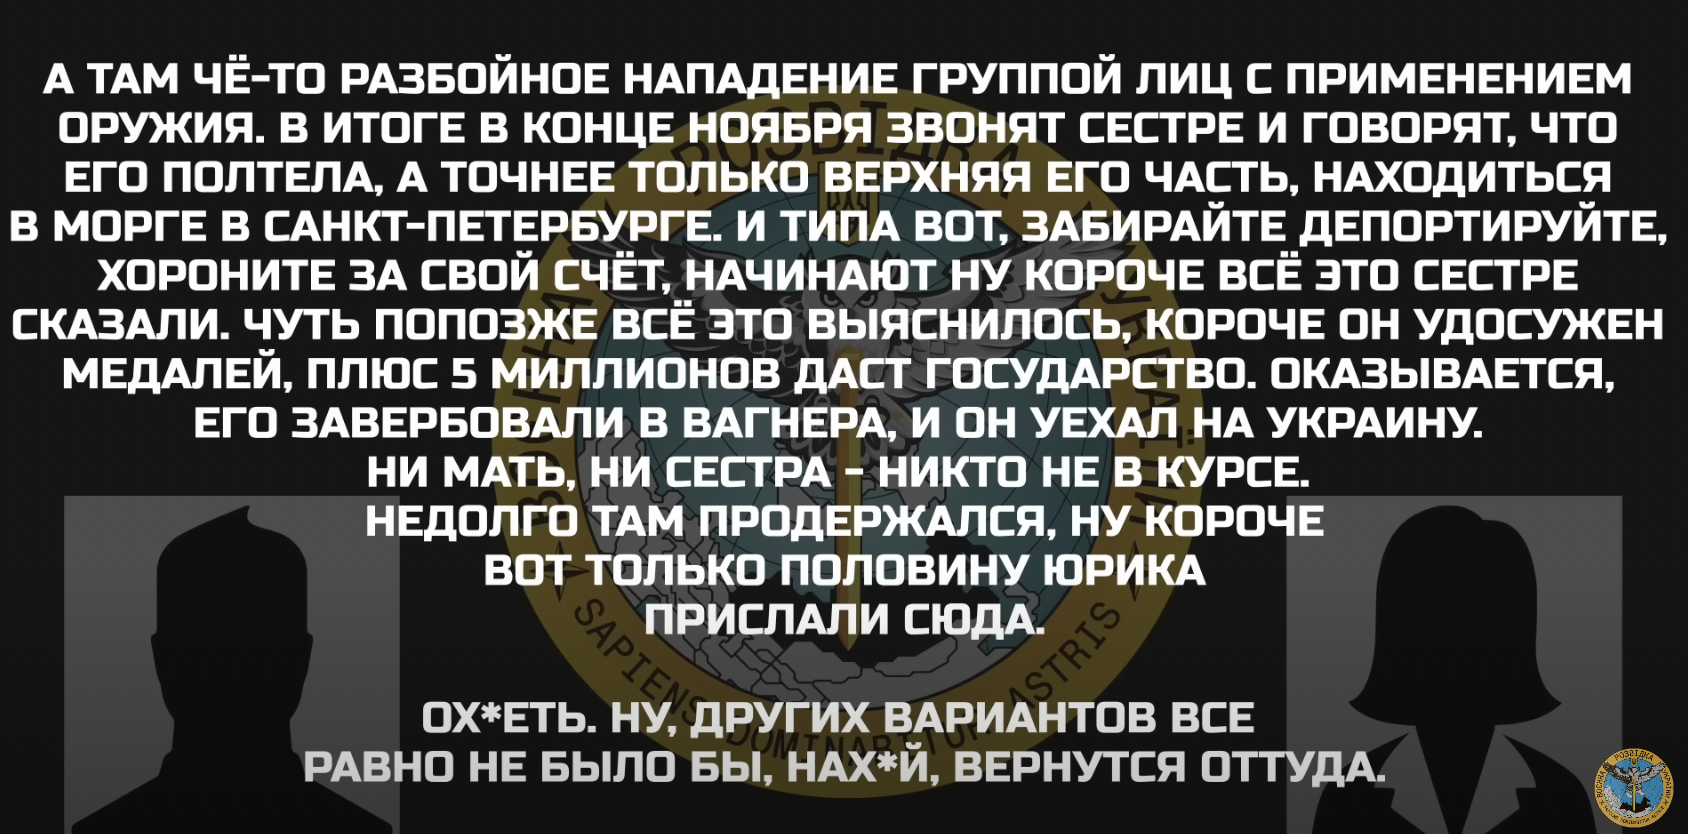 "Только половину Юрика прислали": жена оккупанта жалуется, что "вагнеровцы" в Украине долго не живут. Перехват